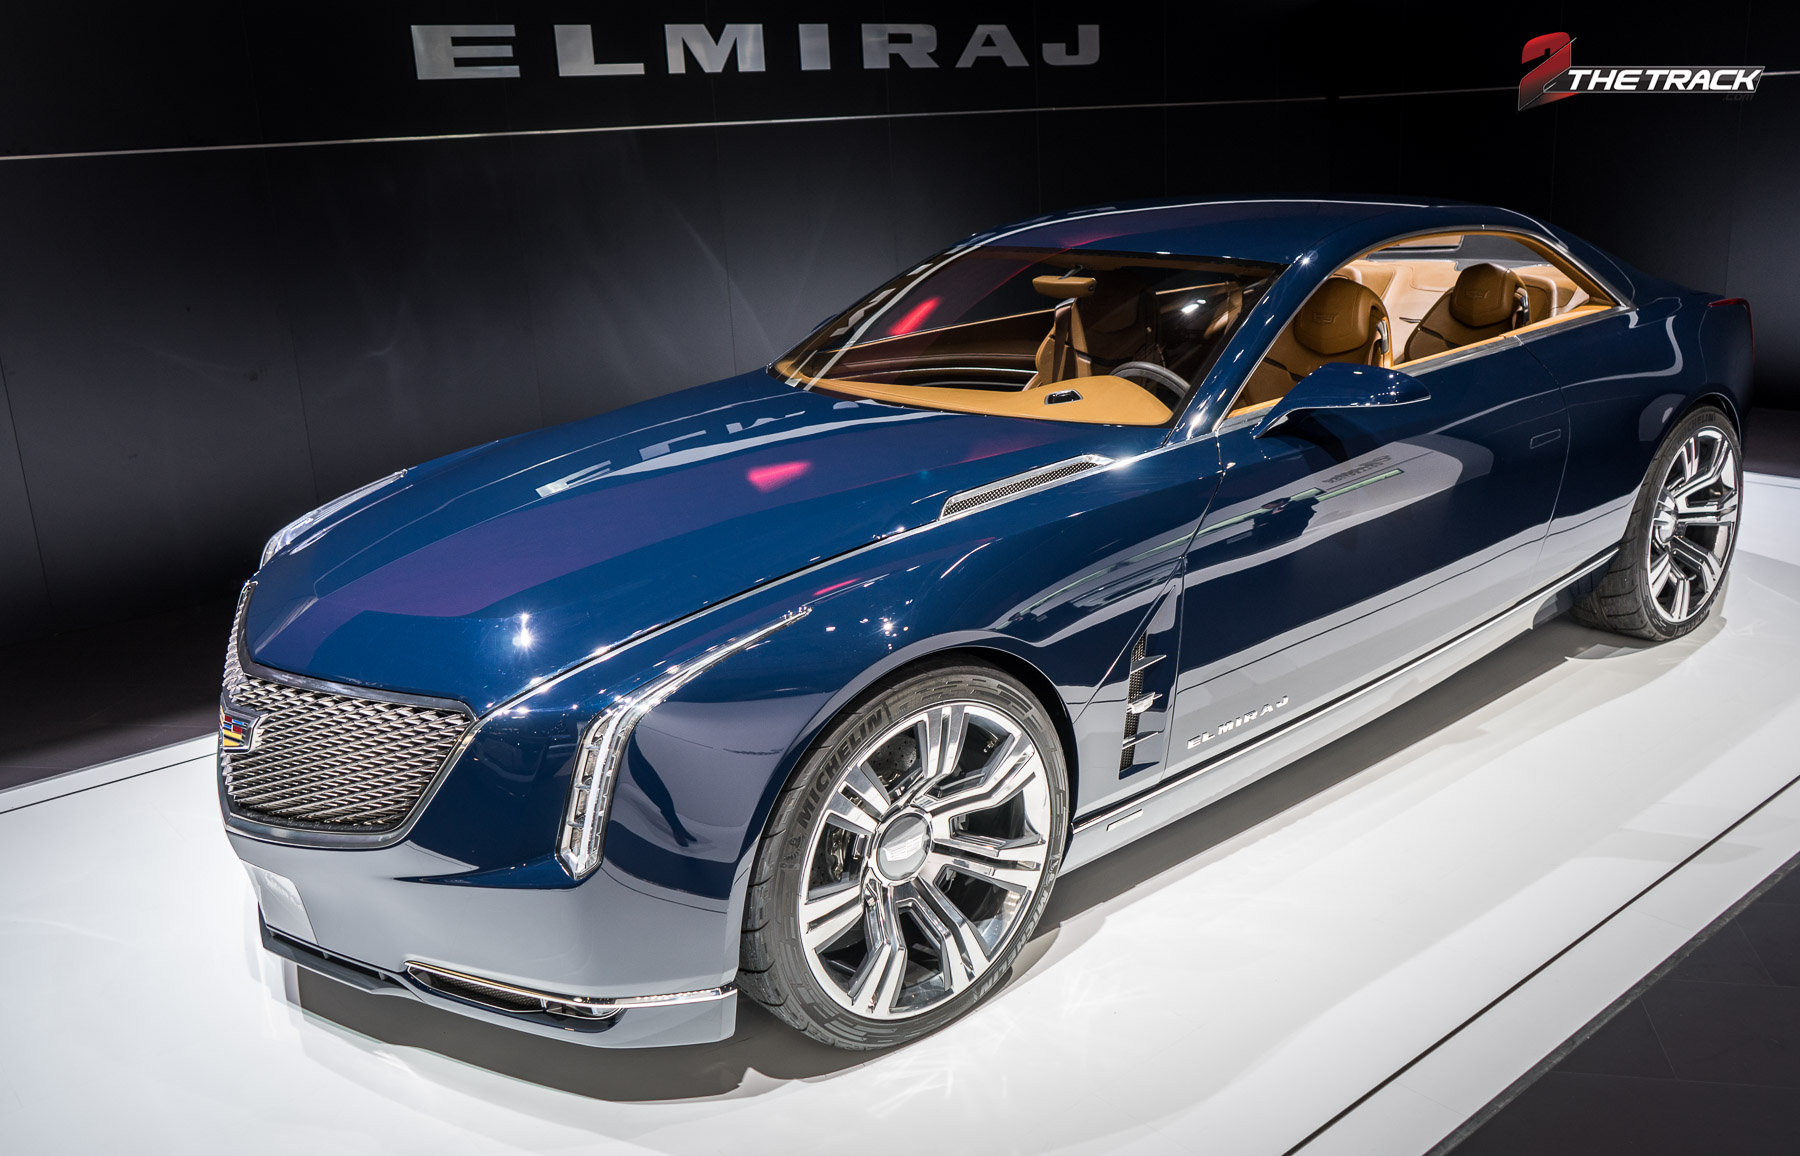 De Cadillac Elmiraj Concept ging vooraf aan het nieuwe topmodel. Van de luxe coupé is uiteindelijk weinig terug te zien in de CT6.